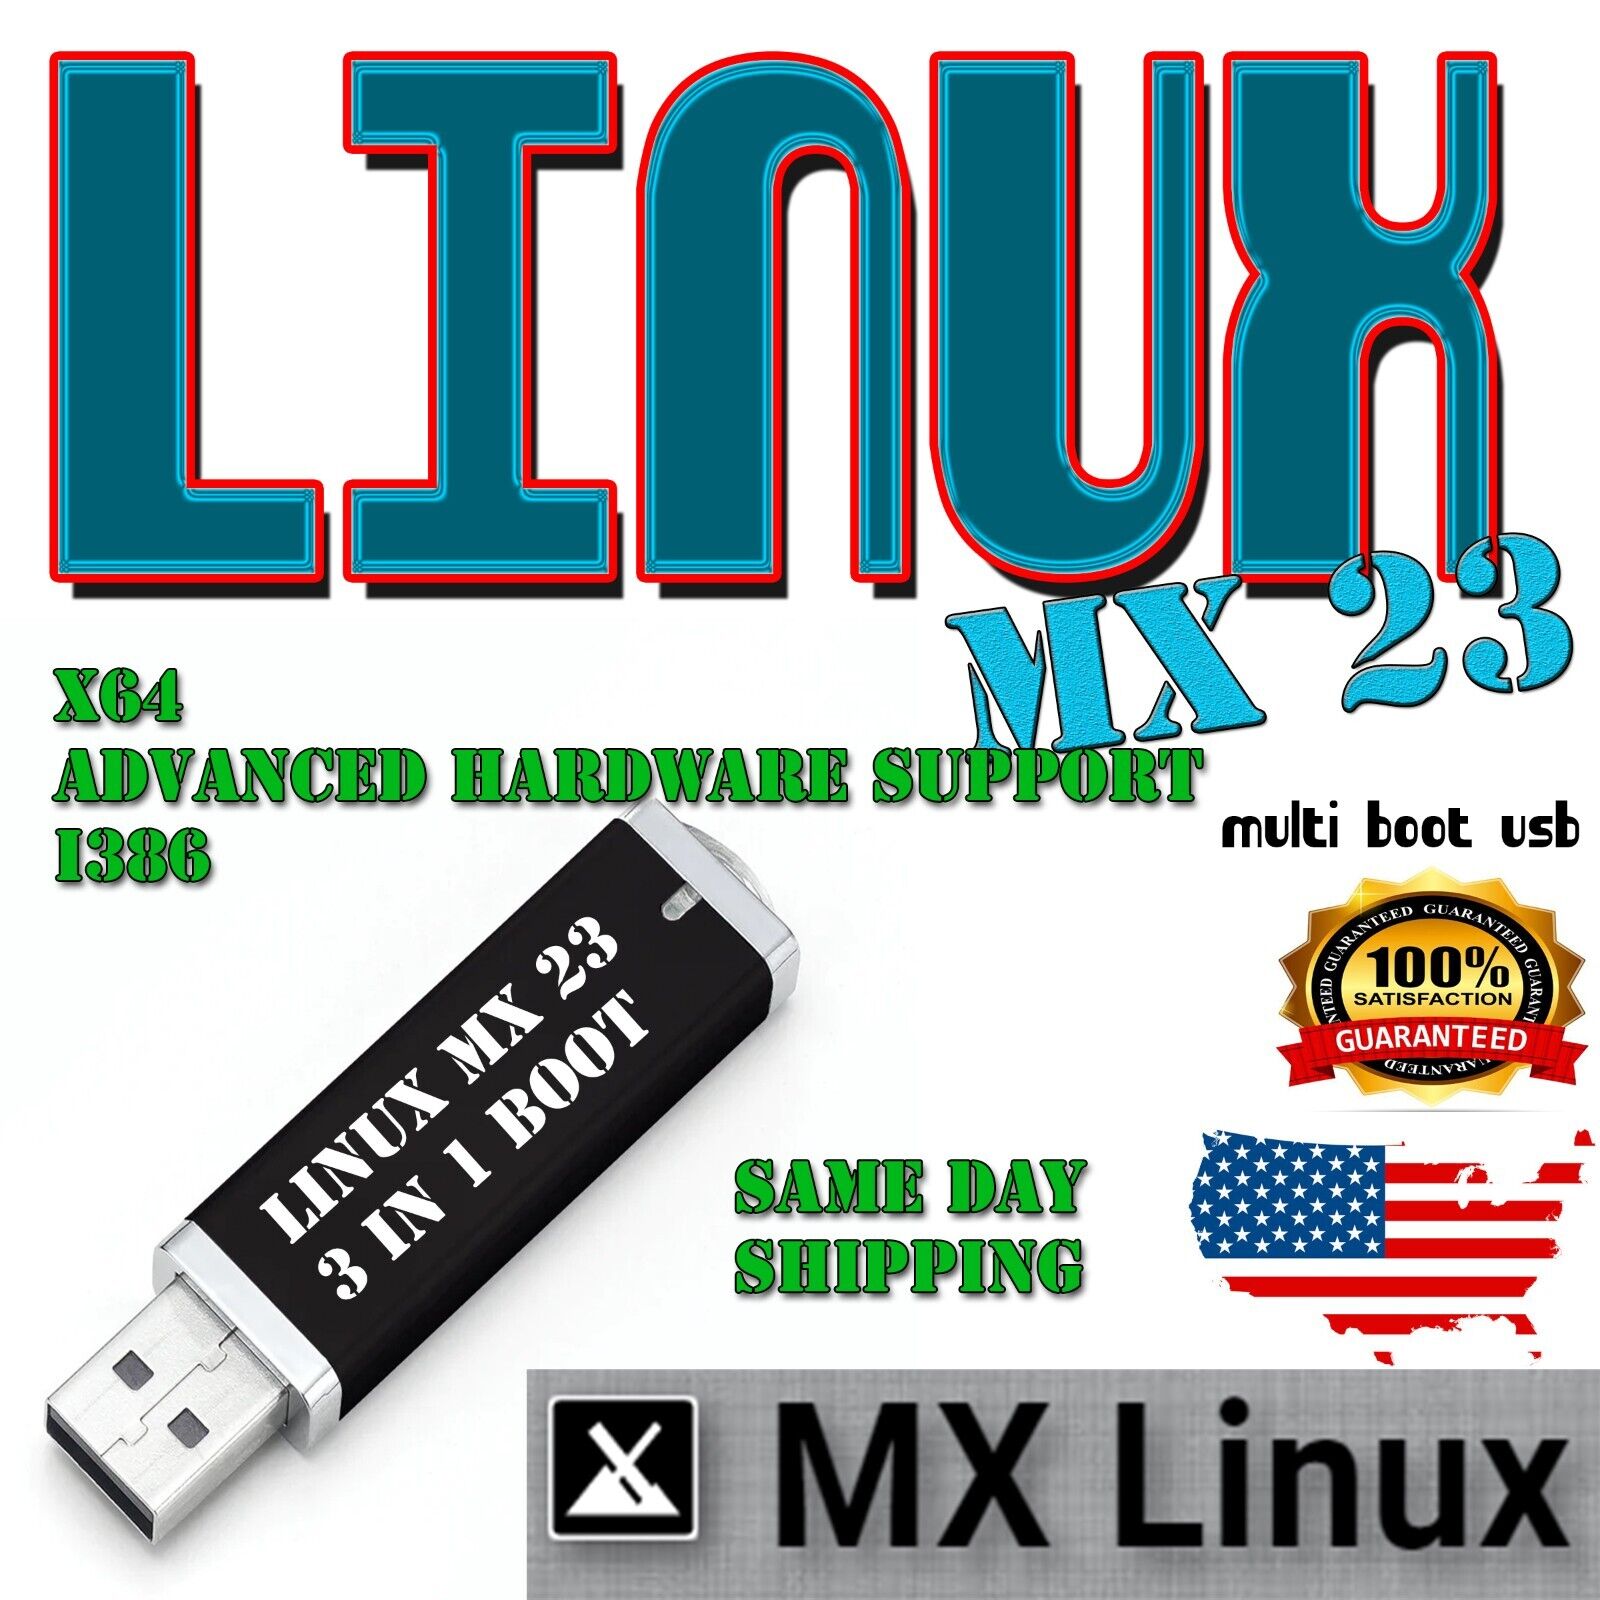 MX Linux 23 - 3 in 1 Multi Boot USB - 64-bit, 32-bit & Advanced Hardware